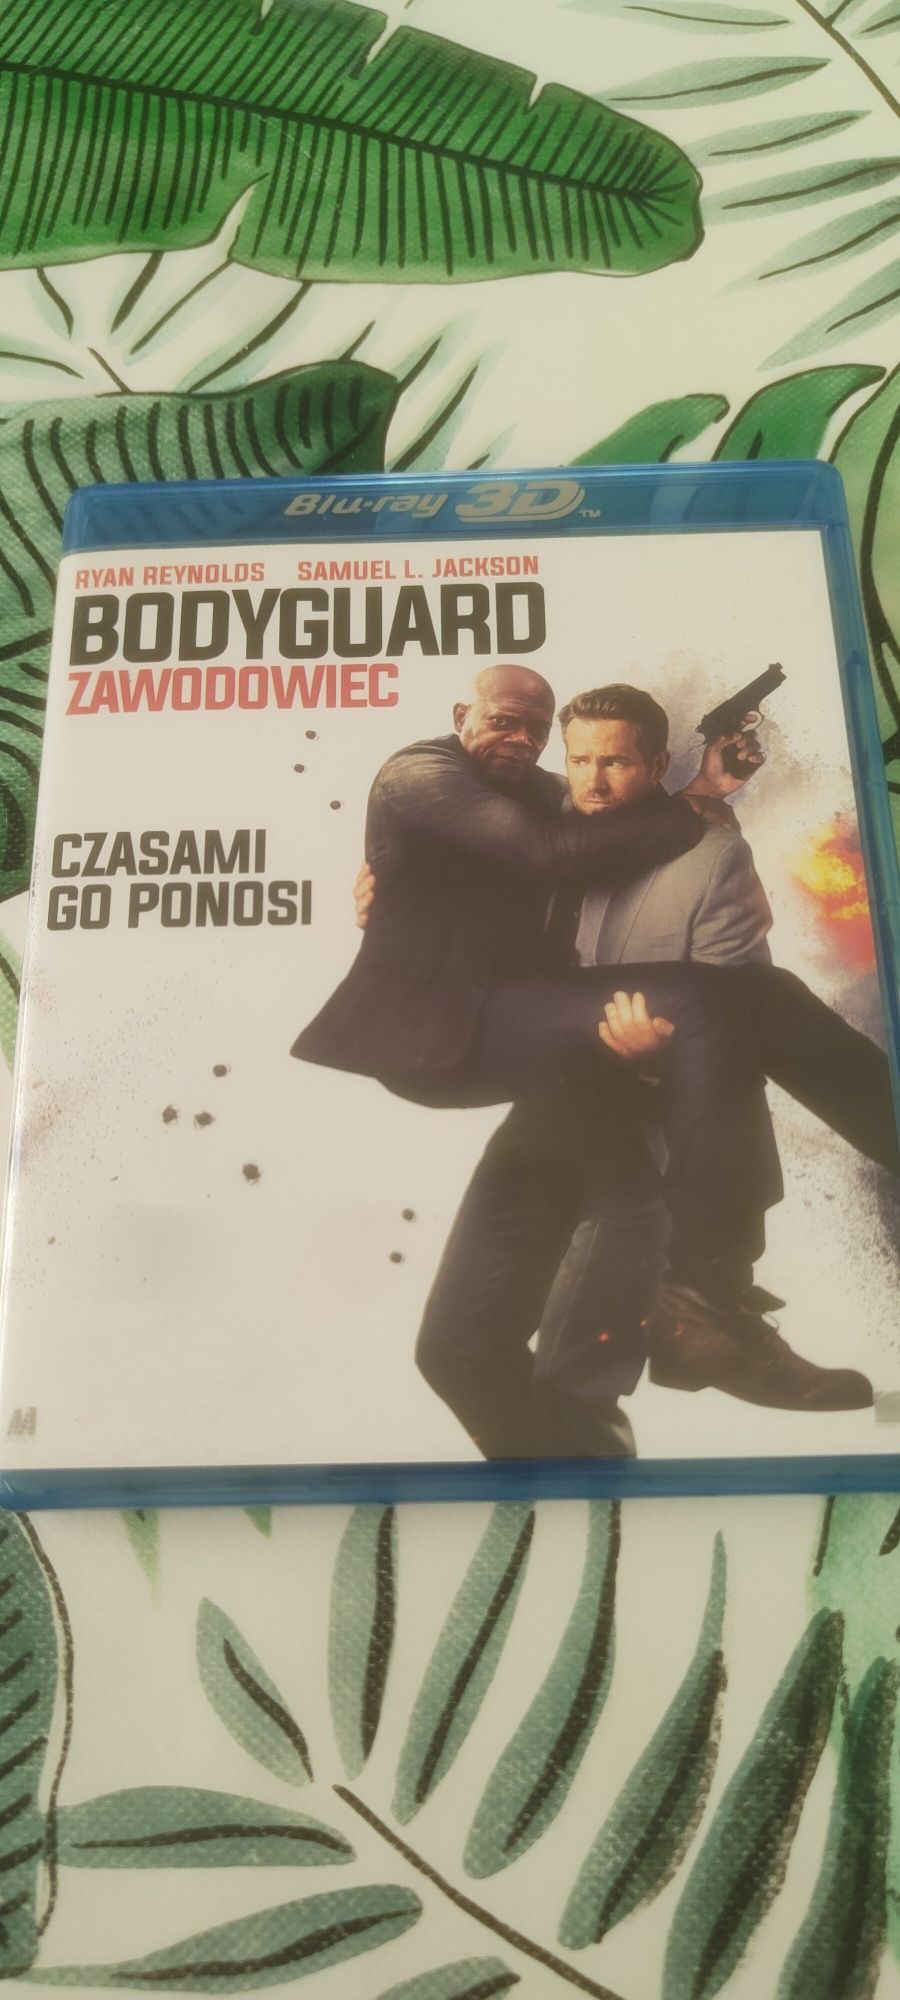 Bodyguard zawodowiec. Blu-ray